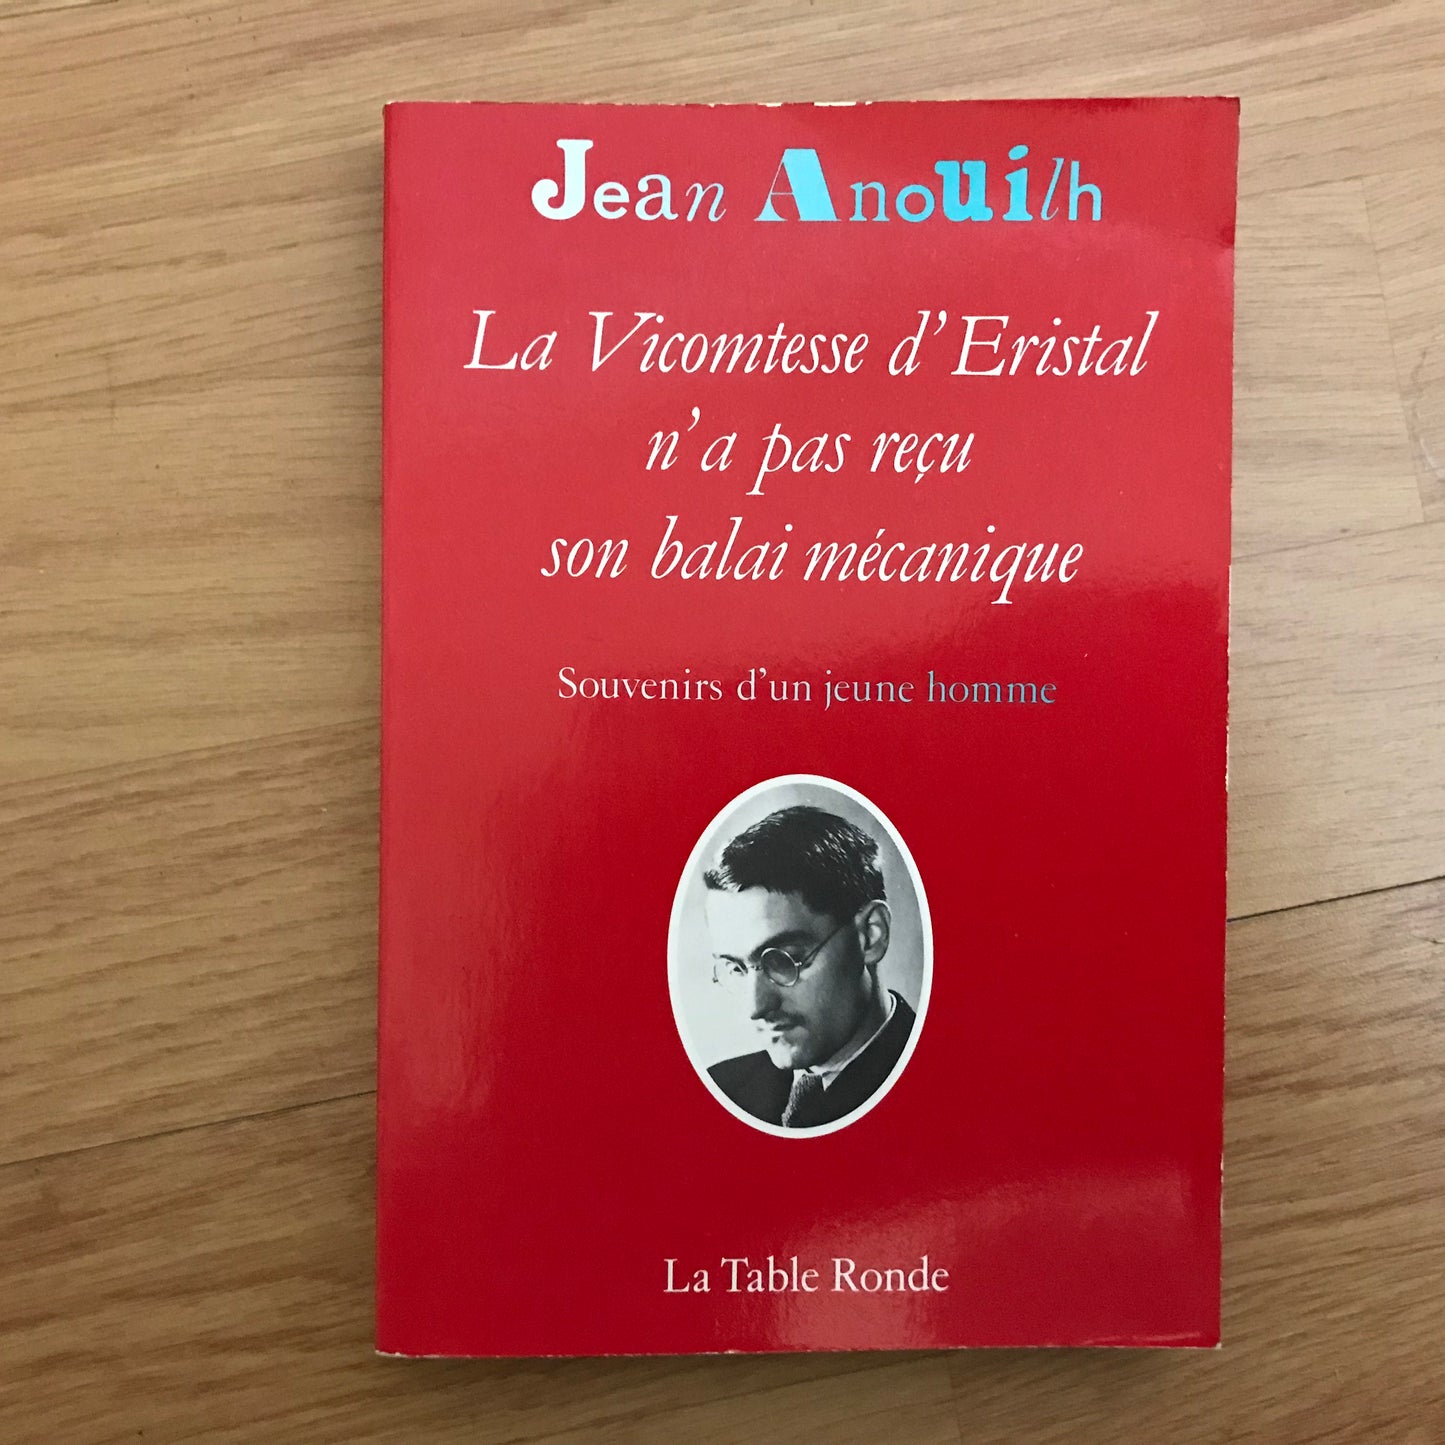 Anouilh, Jean - La Vicomtesse d’Eristal n’a pas reçu son balai mécanique, souvenirs d’un jeune homme